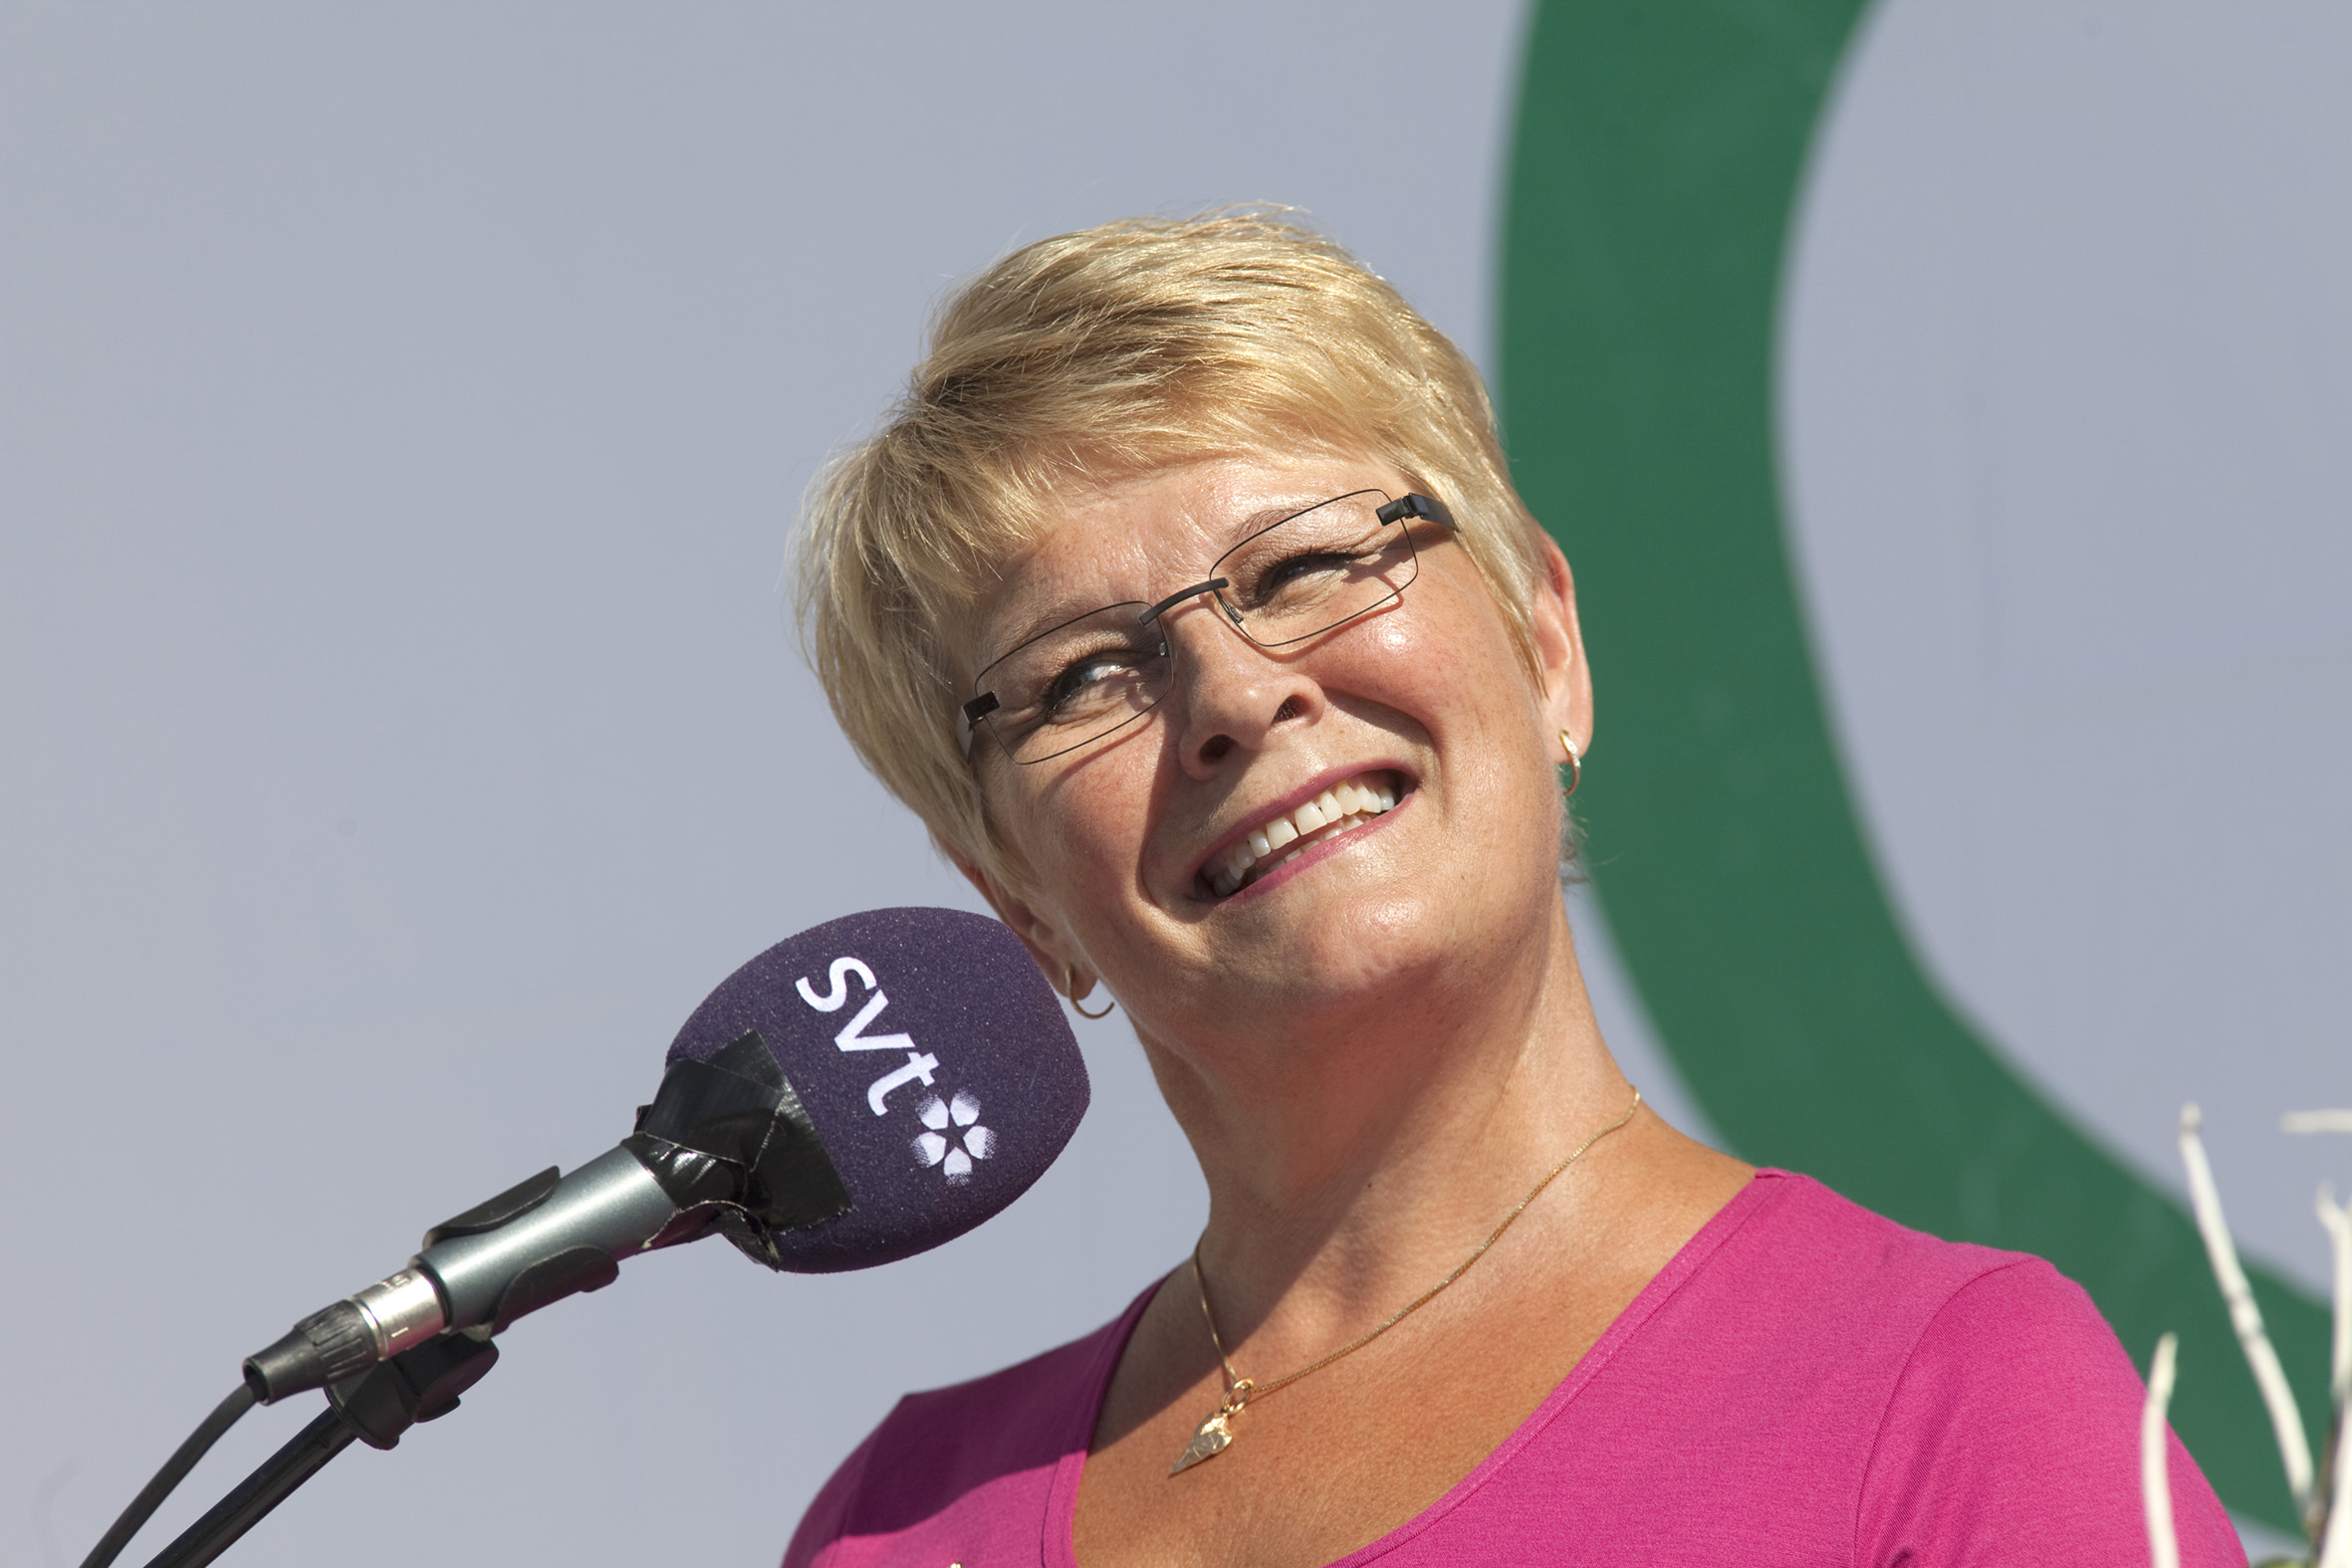 Riksdagsvalet 2010, Maud Olofsson, TV4, Centerpartiet, reklamfilm, Reklam